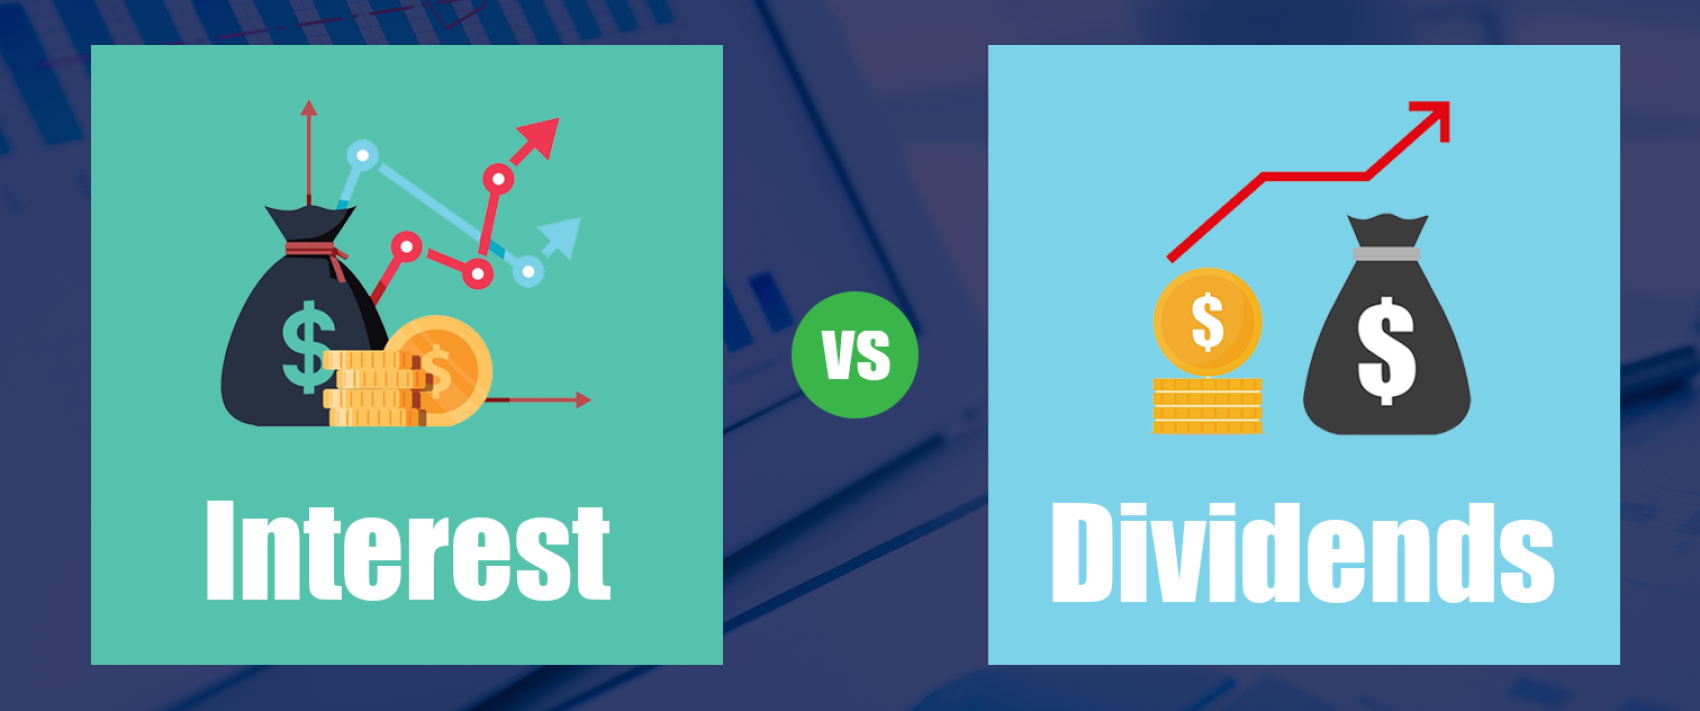 Dividend-vs-Interest